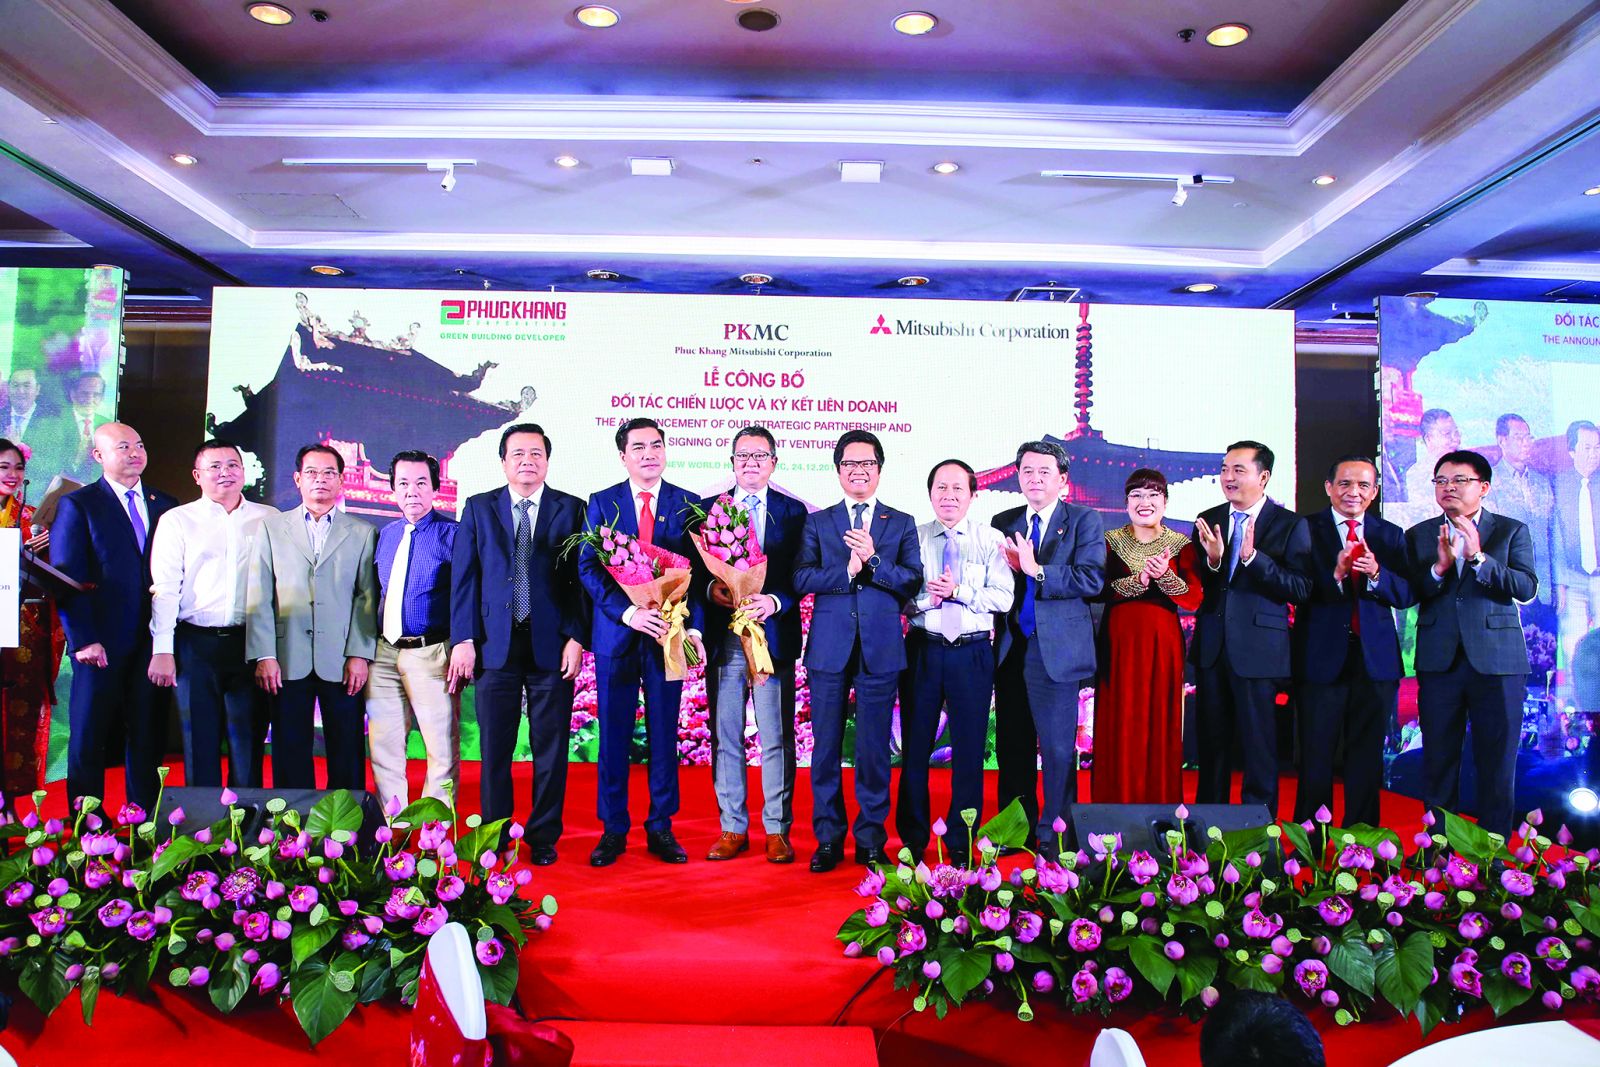 Ban lãnh đạo Phuc Khanh Corporation và Ban lãnh đạo Mitsubishi Corporation cùng các cấp lãnh đạo trung ương và các đối tác trong buổi ký kết liên doanh